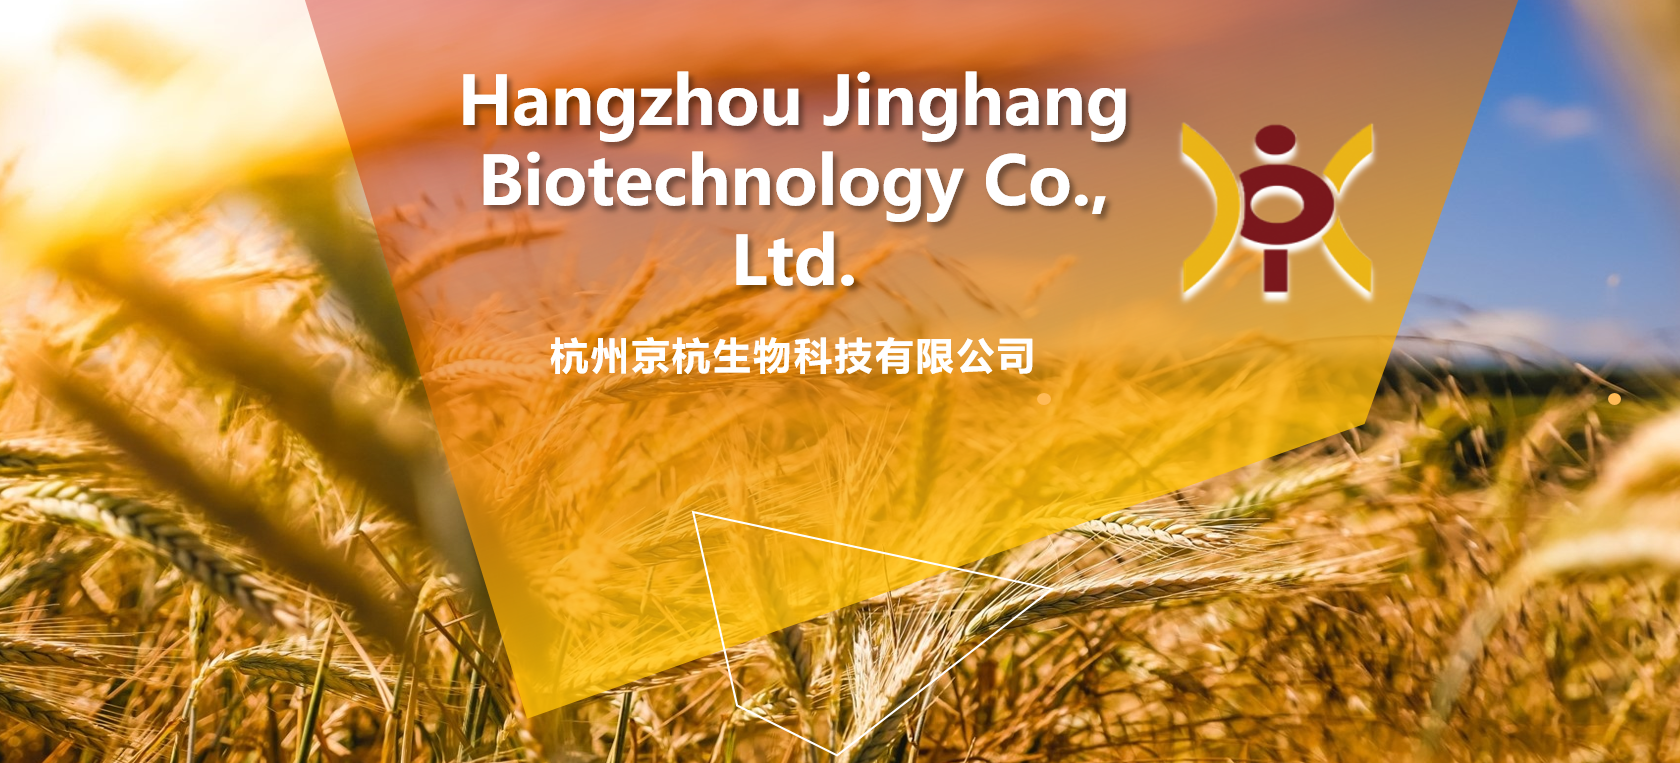 Больше Hangzhou Jinghang Biotechnology Co., Ltd.  и не только ⭐